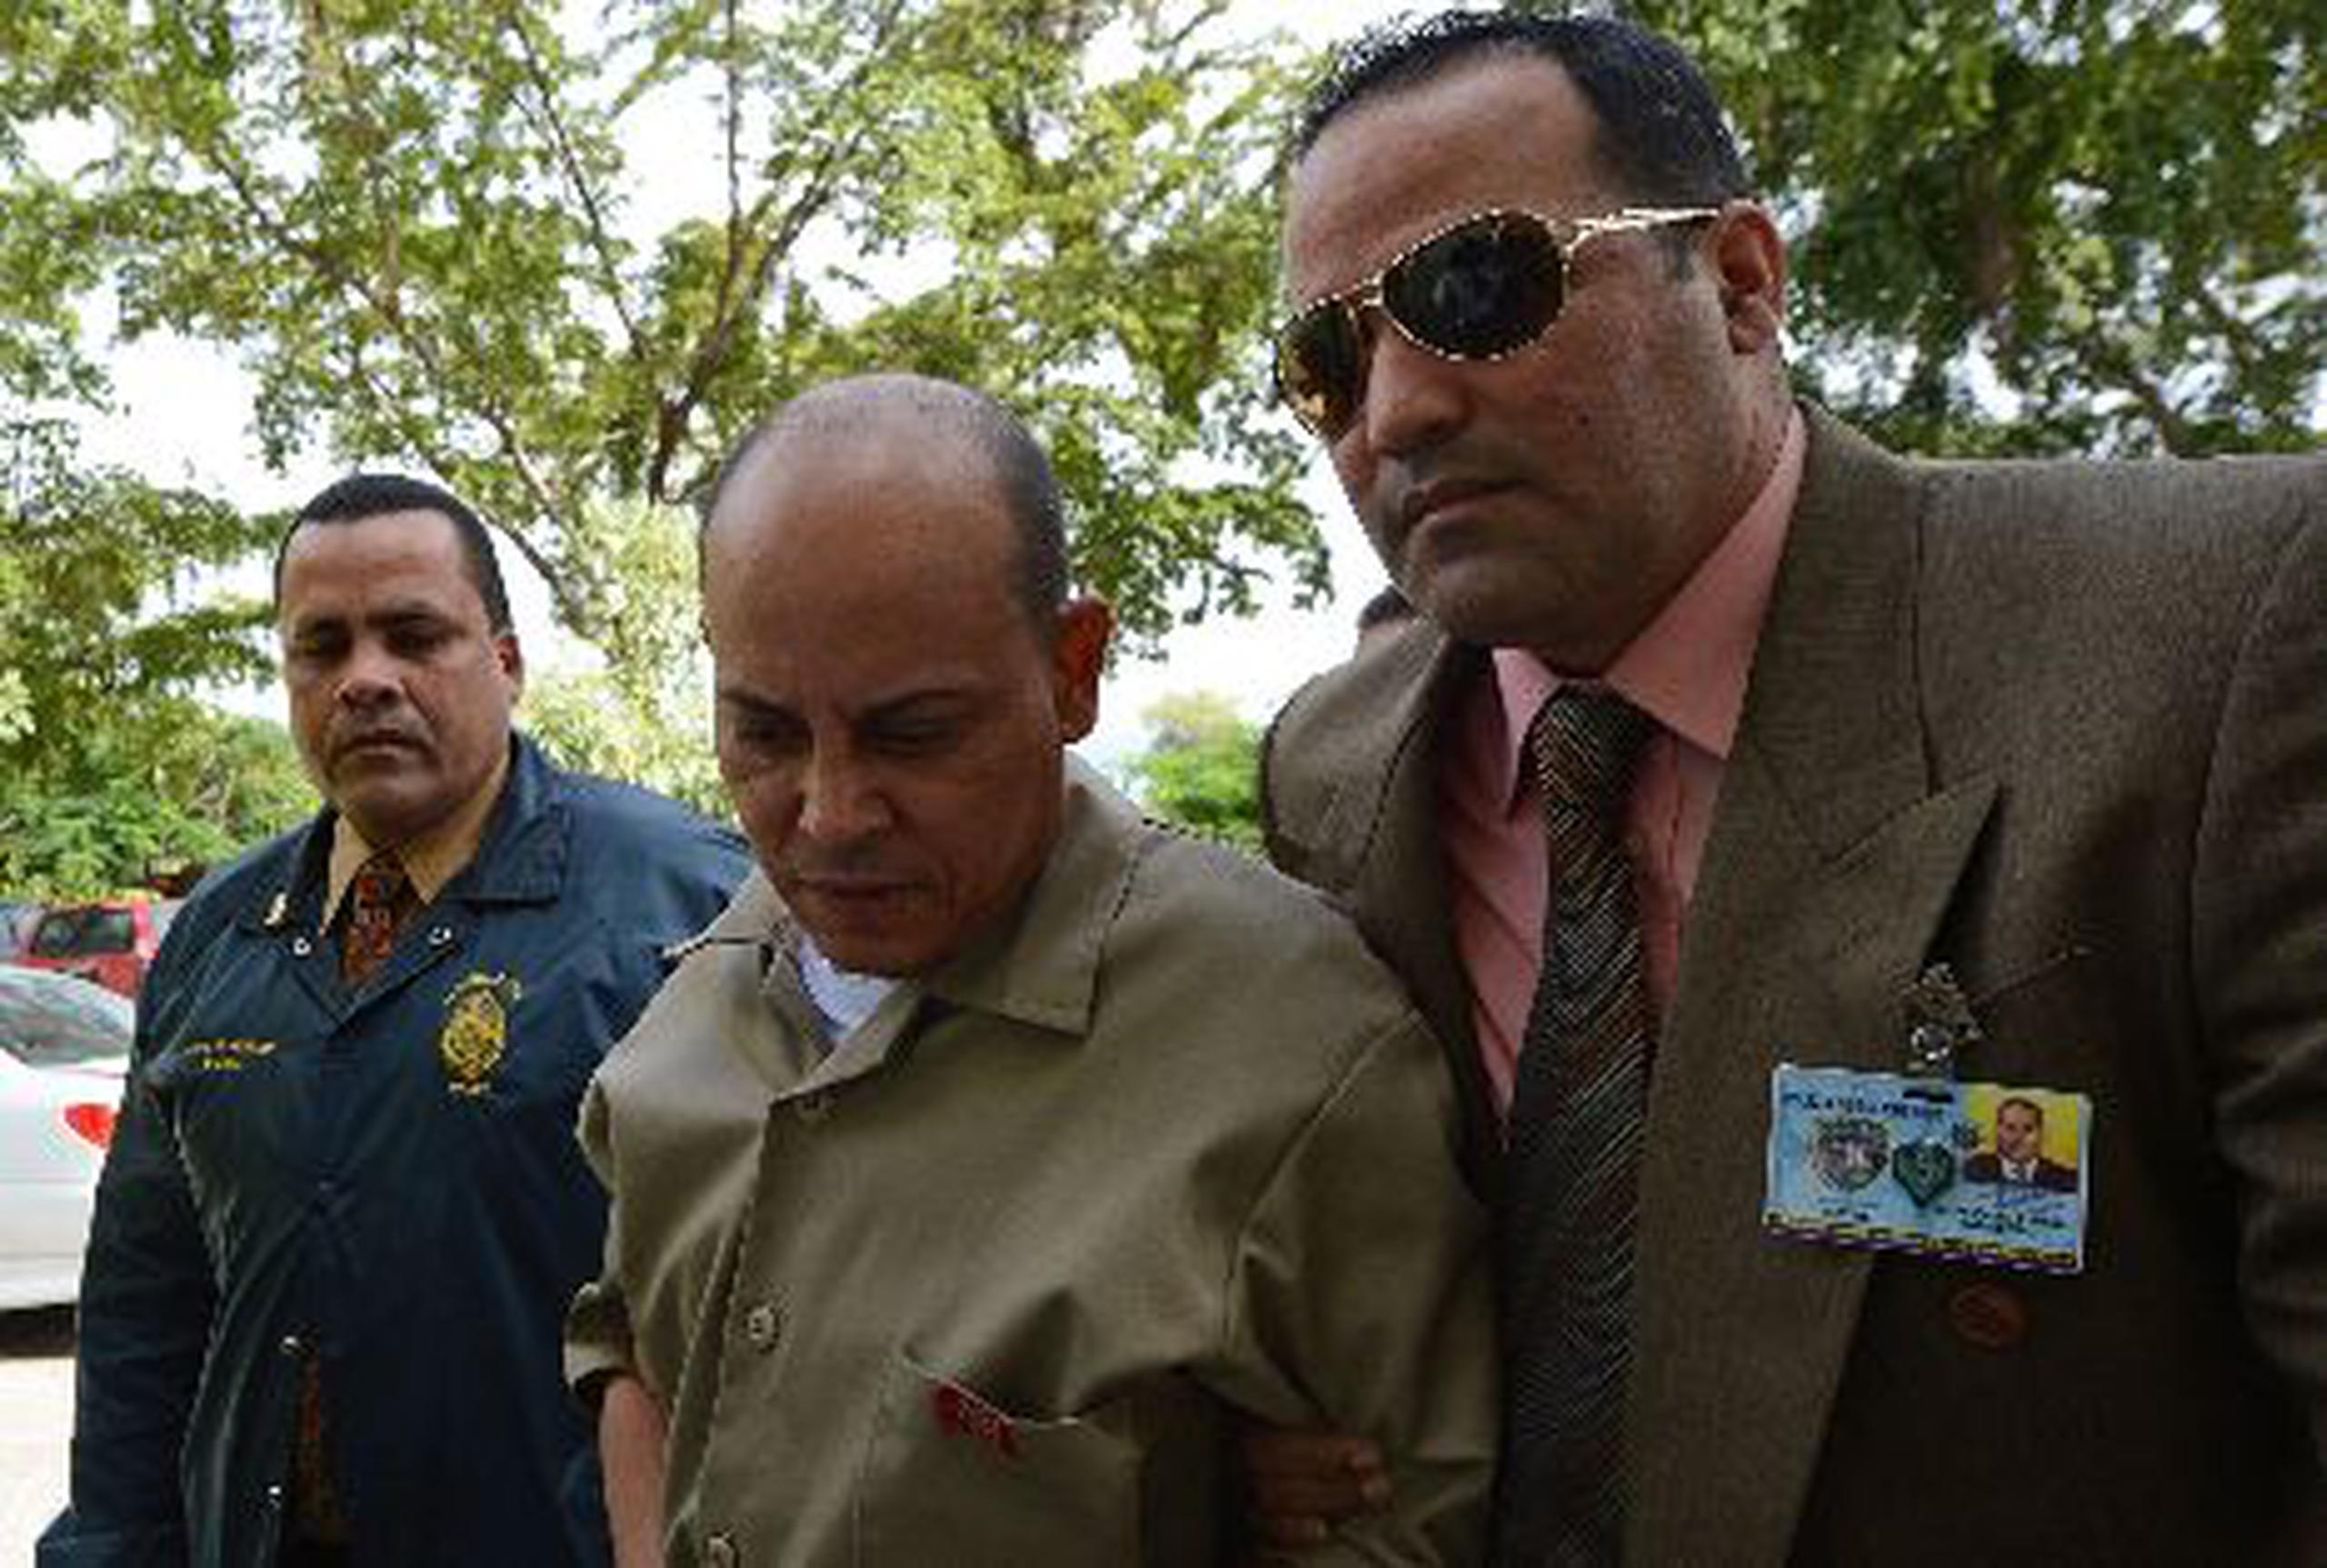  Elvin Román Díaz, acusado de la muerte del joven Juan Carlos Ruiz Vega, fue arrestado el pasado 3 de diciembre en un operativo de la División de Drogas de Ponce.&nbsp;<font color="yellow">(Para Primera Hora / Edgar Vázquez Colón)</font>